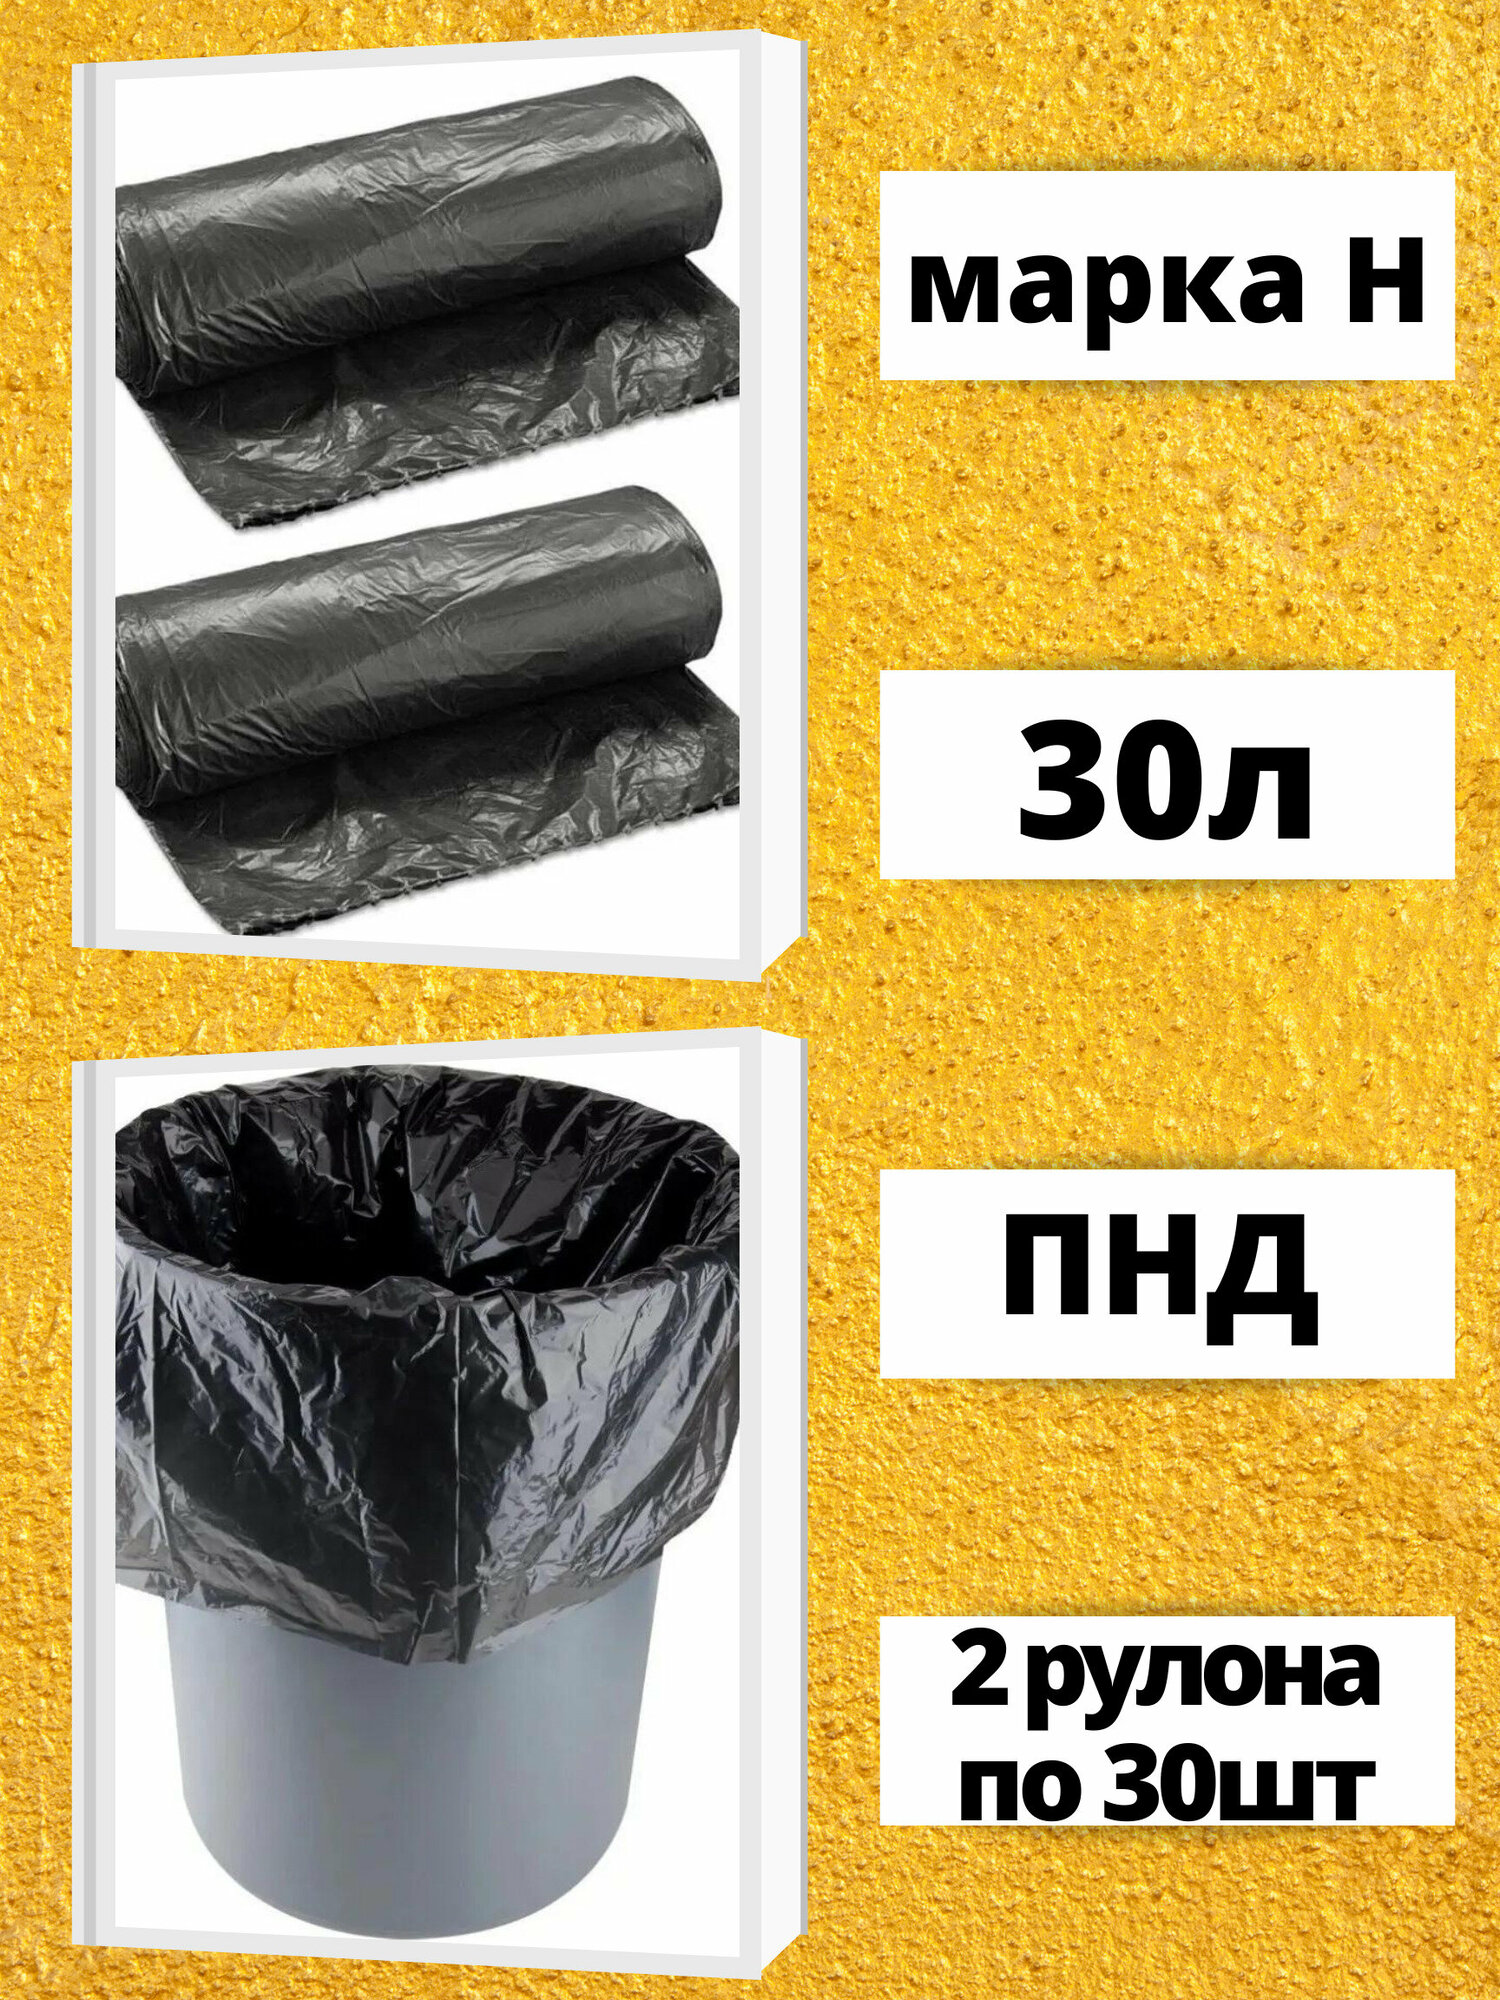 Пакеты для мусора 30 литров, 2 рулона по 30 штук, черные, марка "Н"Мусорные мешки.